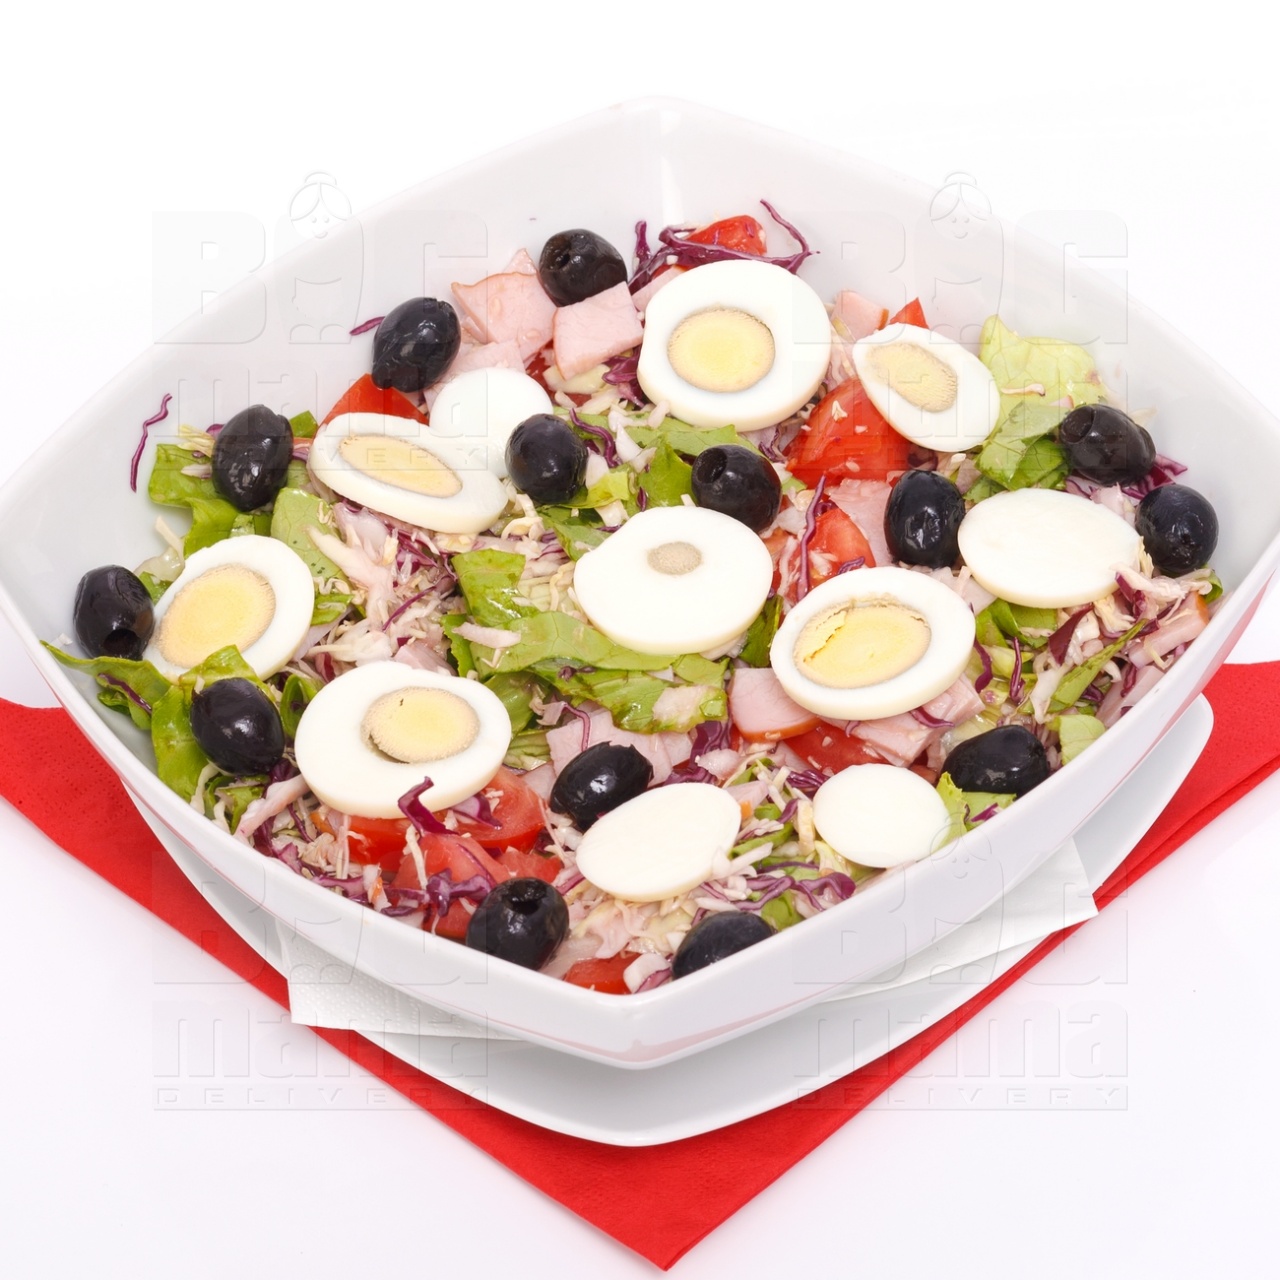 Product #31 image - Big Mama salad